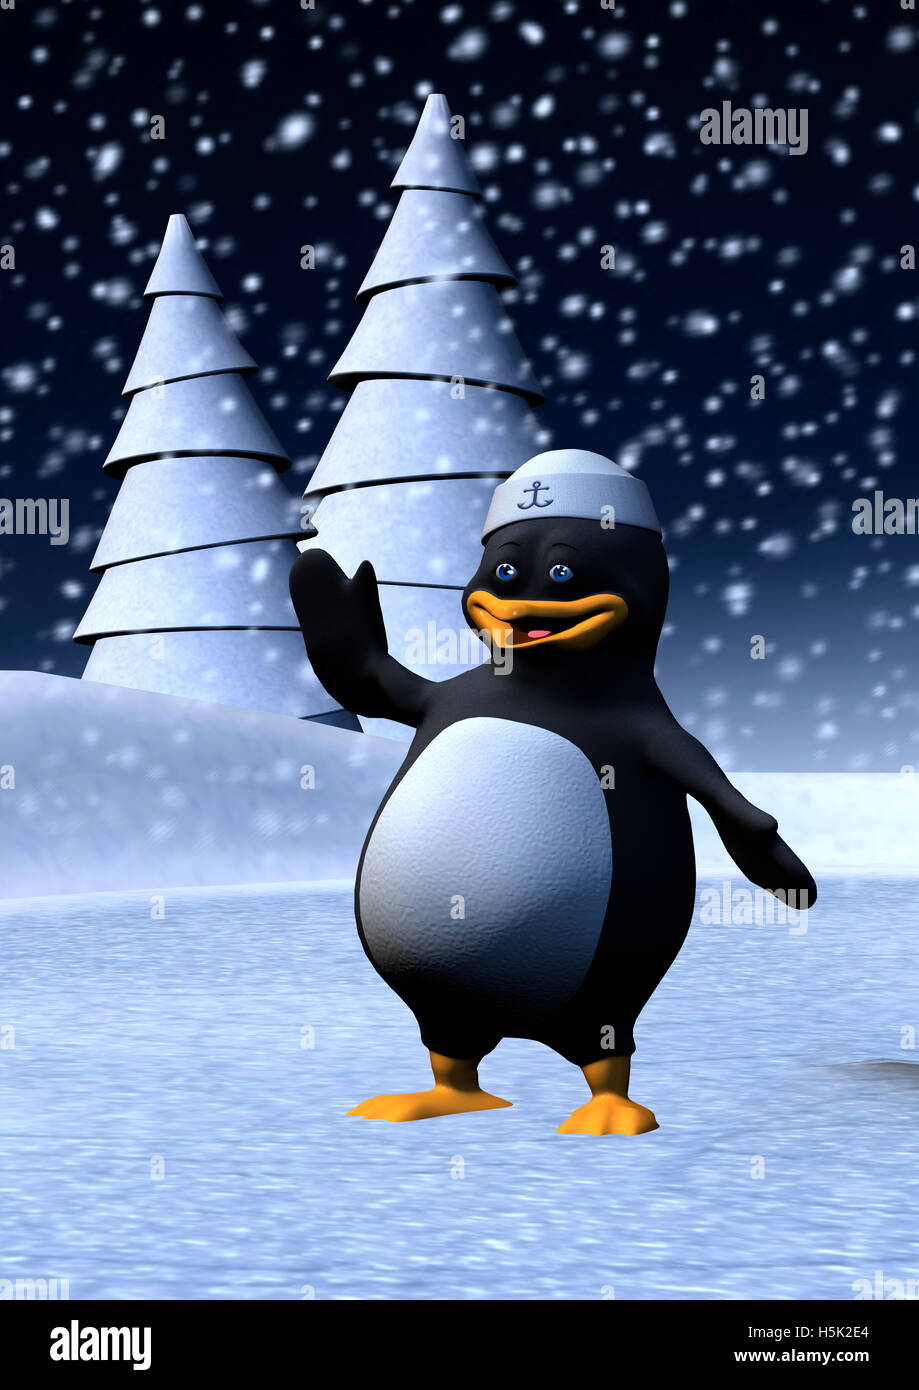 Numérique 3D render of a cute penguin portant un chapeau de marin sur un fond de paysage d'hiver Banque D'Images